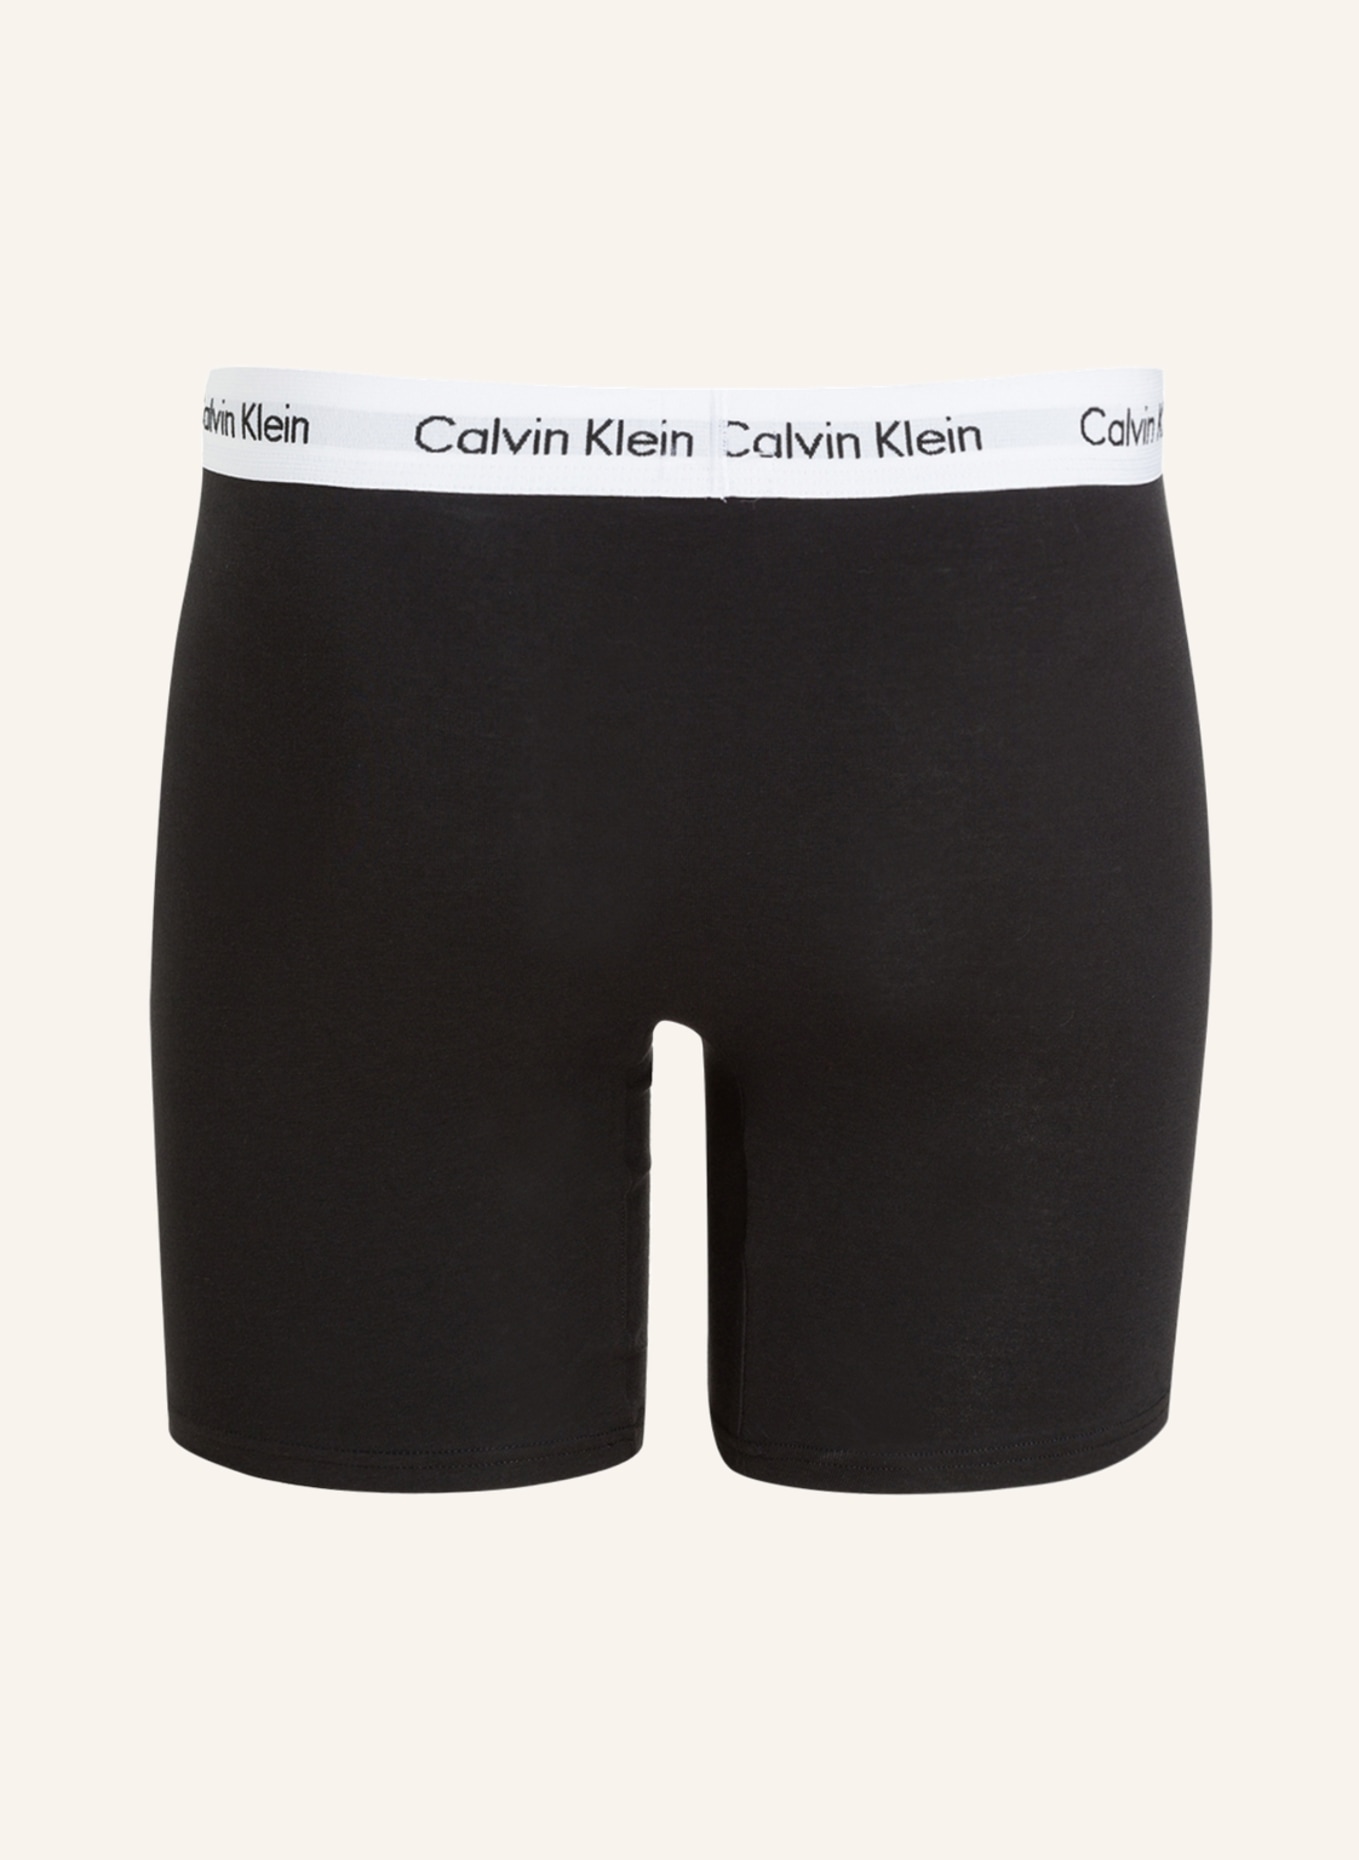 Men's Briefs Calvin Klein Black 3 Pack Underwear